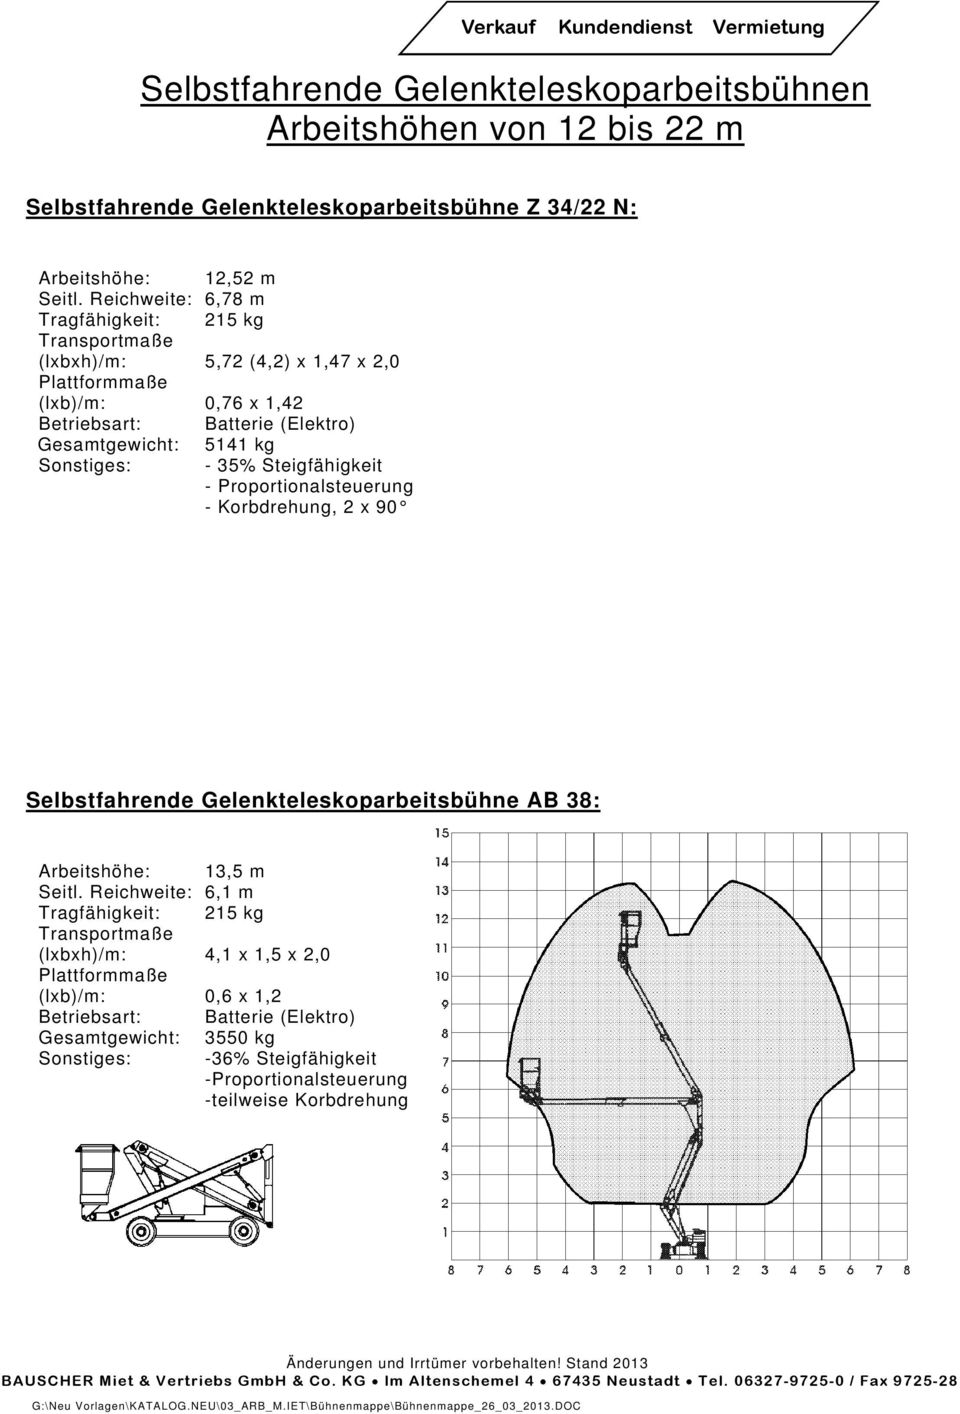 Steigfähigkeit - Proportionalsteuerung - Korbdrehung, 2 x 90 Selbstfahrende Gelenkteleskoparbeitsbühne AB 38: 13,5 m Seitl.